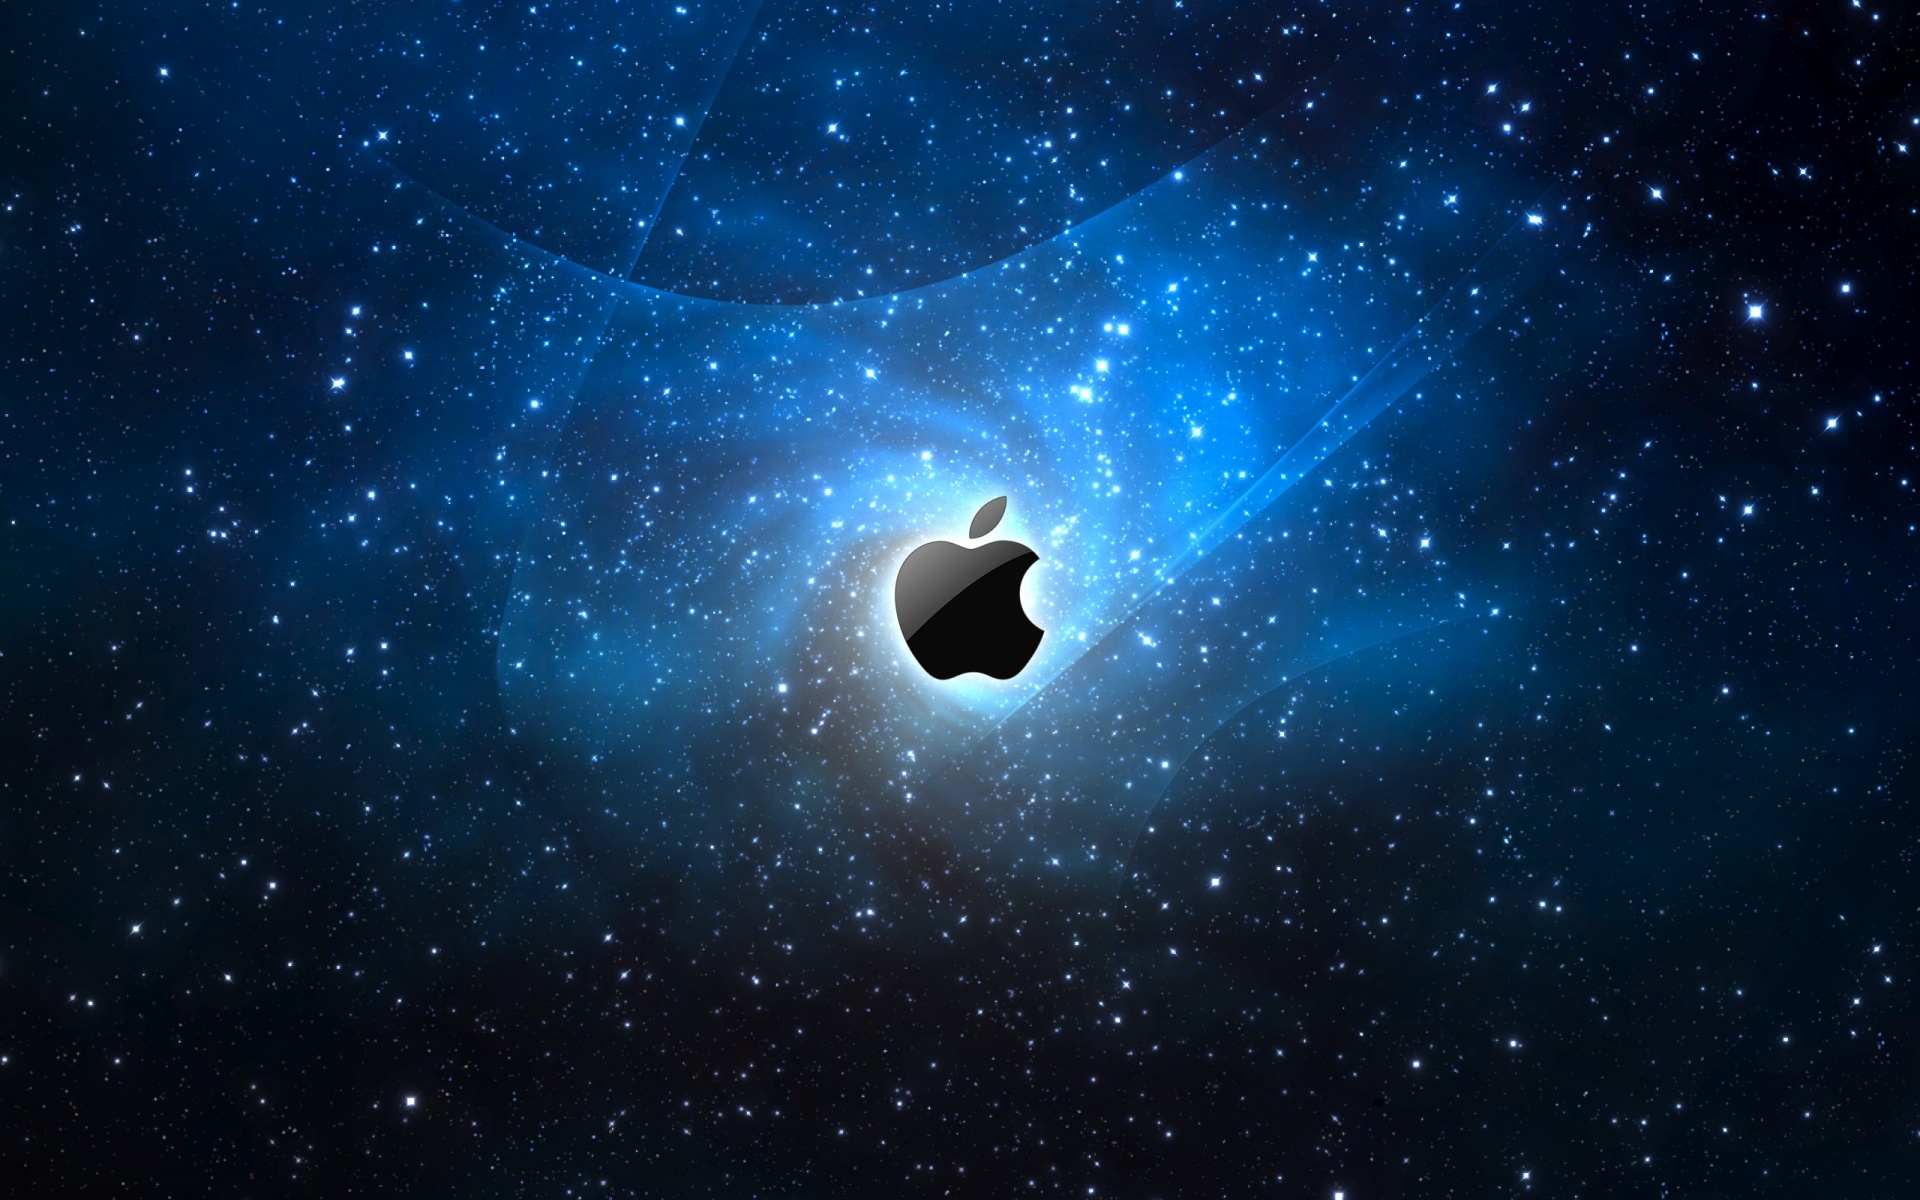 Descarga gratuita de fondo de pantalla para móvil de Manzana, Tecnología.